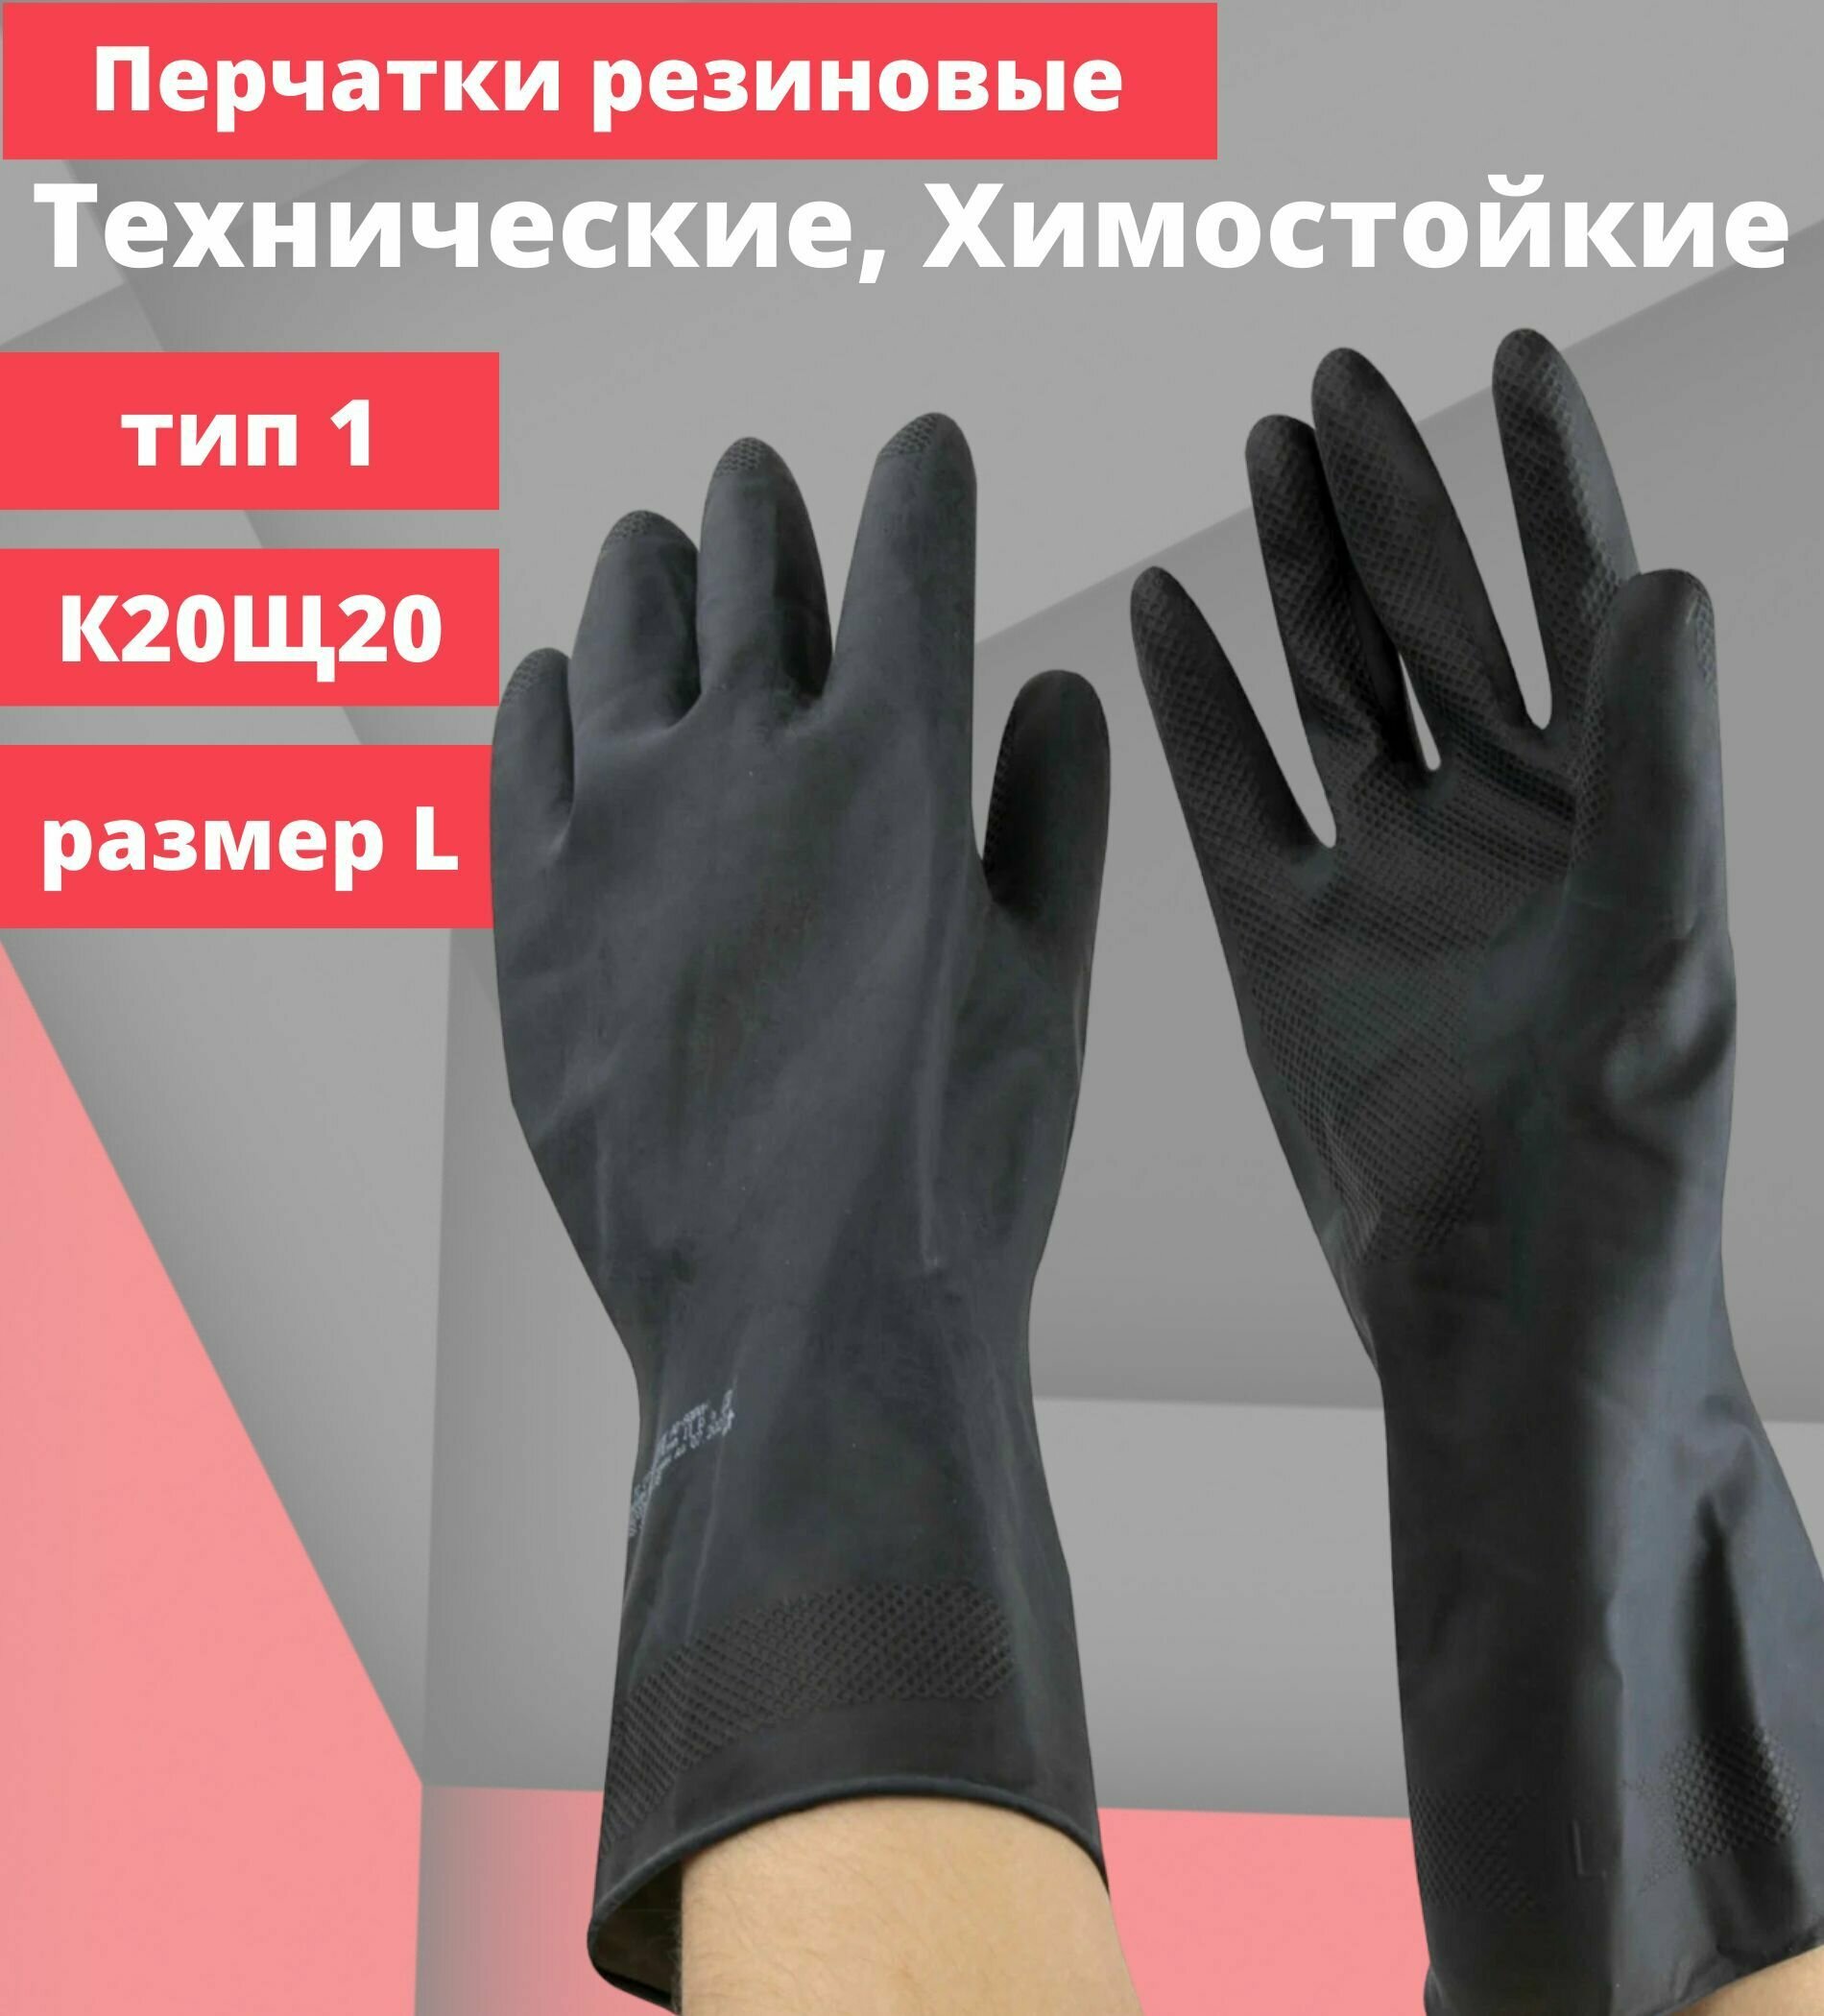 Перчатки защитные резиновые, латекс, химостойкие азрихим, КЩС тип 1, К20Щ20, кислощелочестойкие